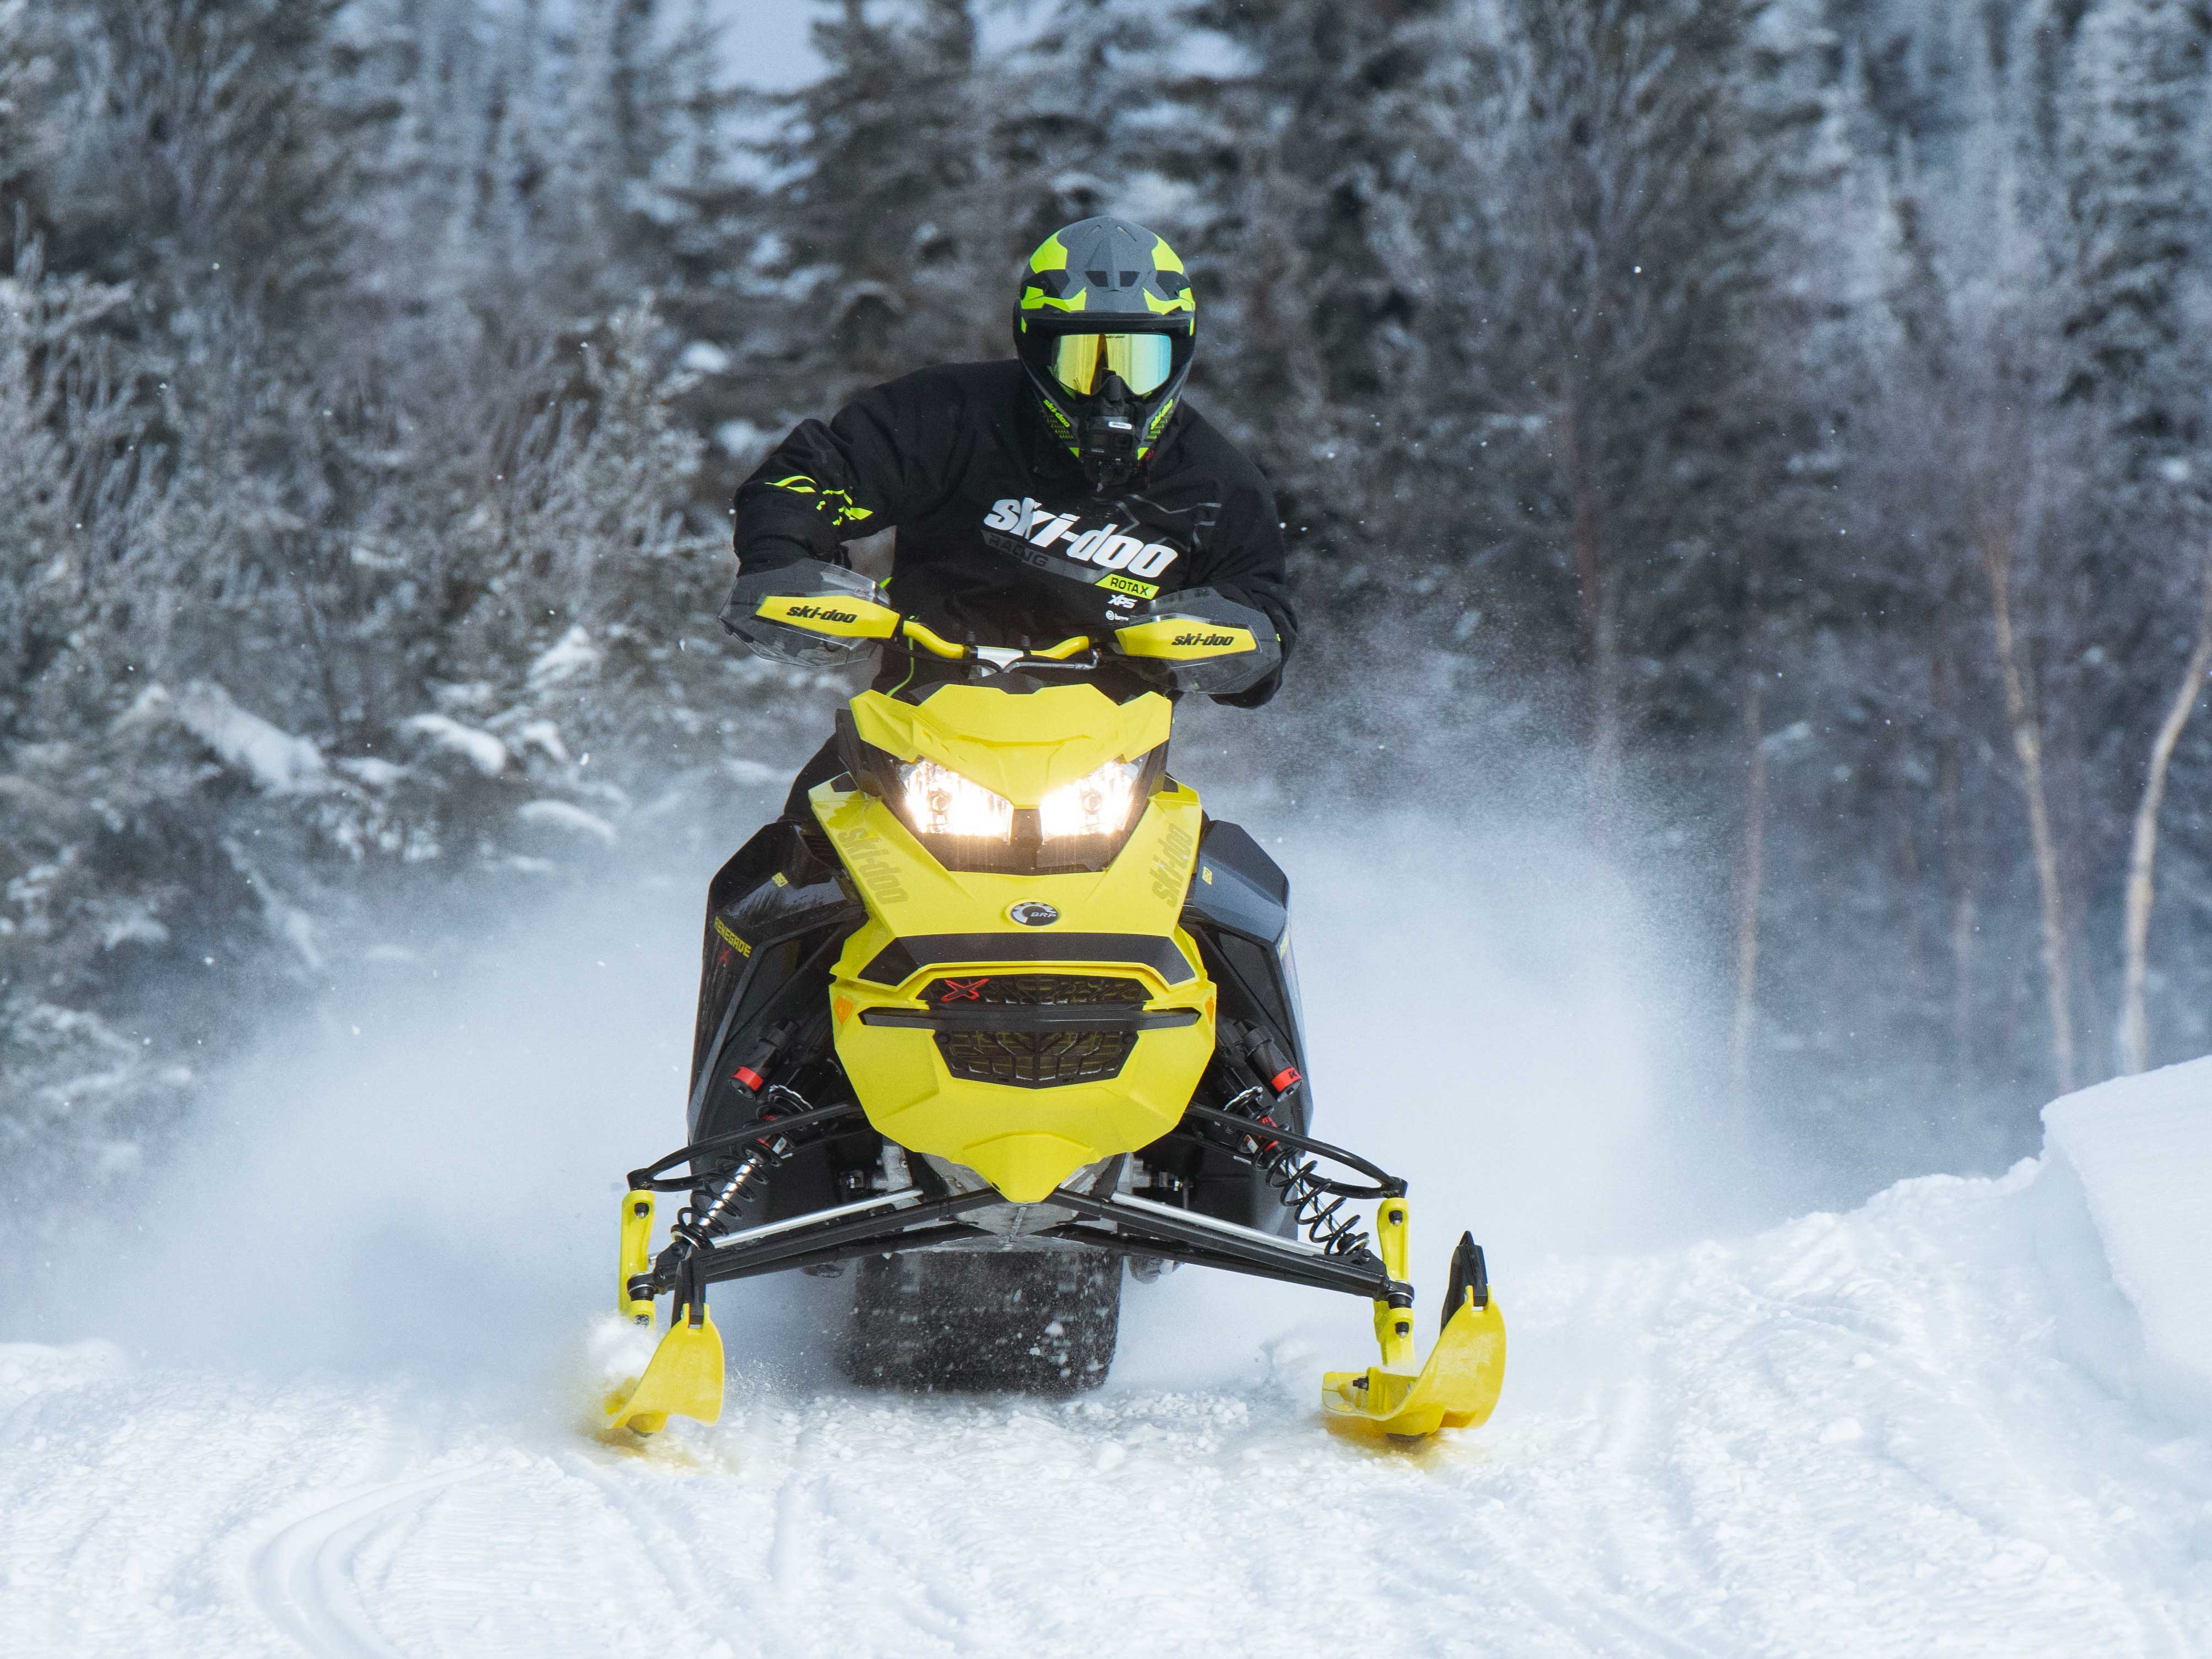 2022 Ski-Doo Renegade në një shteg makinash dëbore